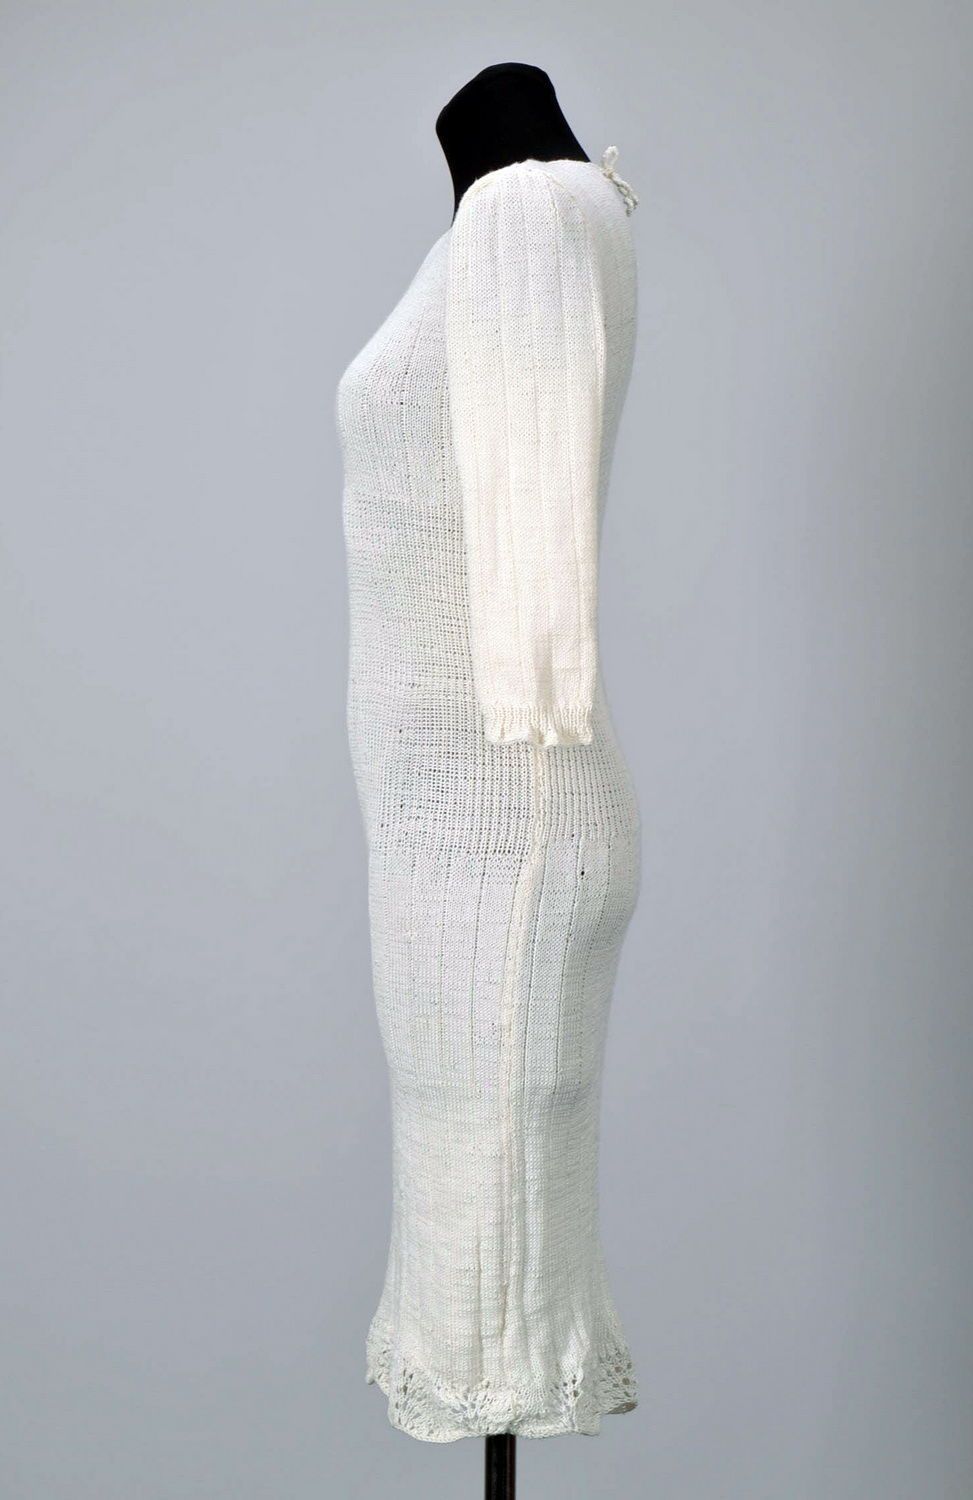 Robe tricotée blanche faite main photo 4